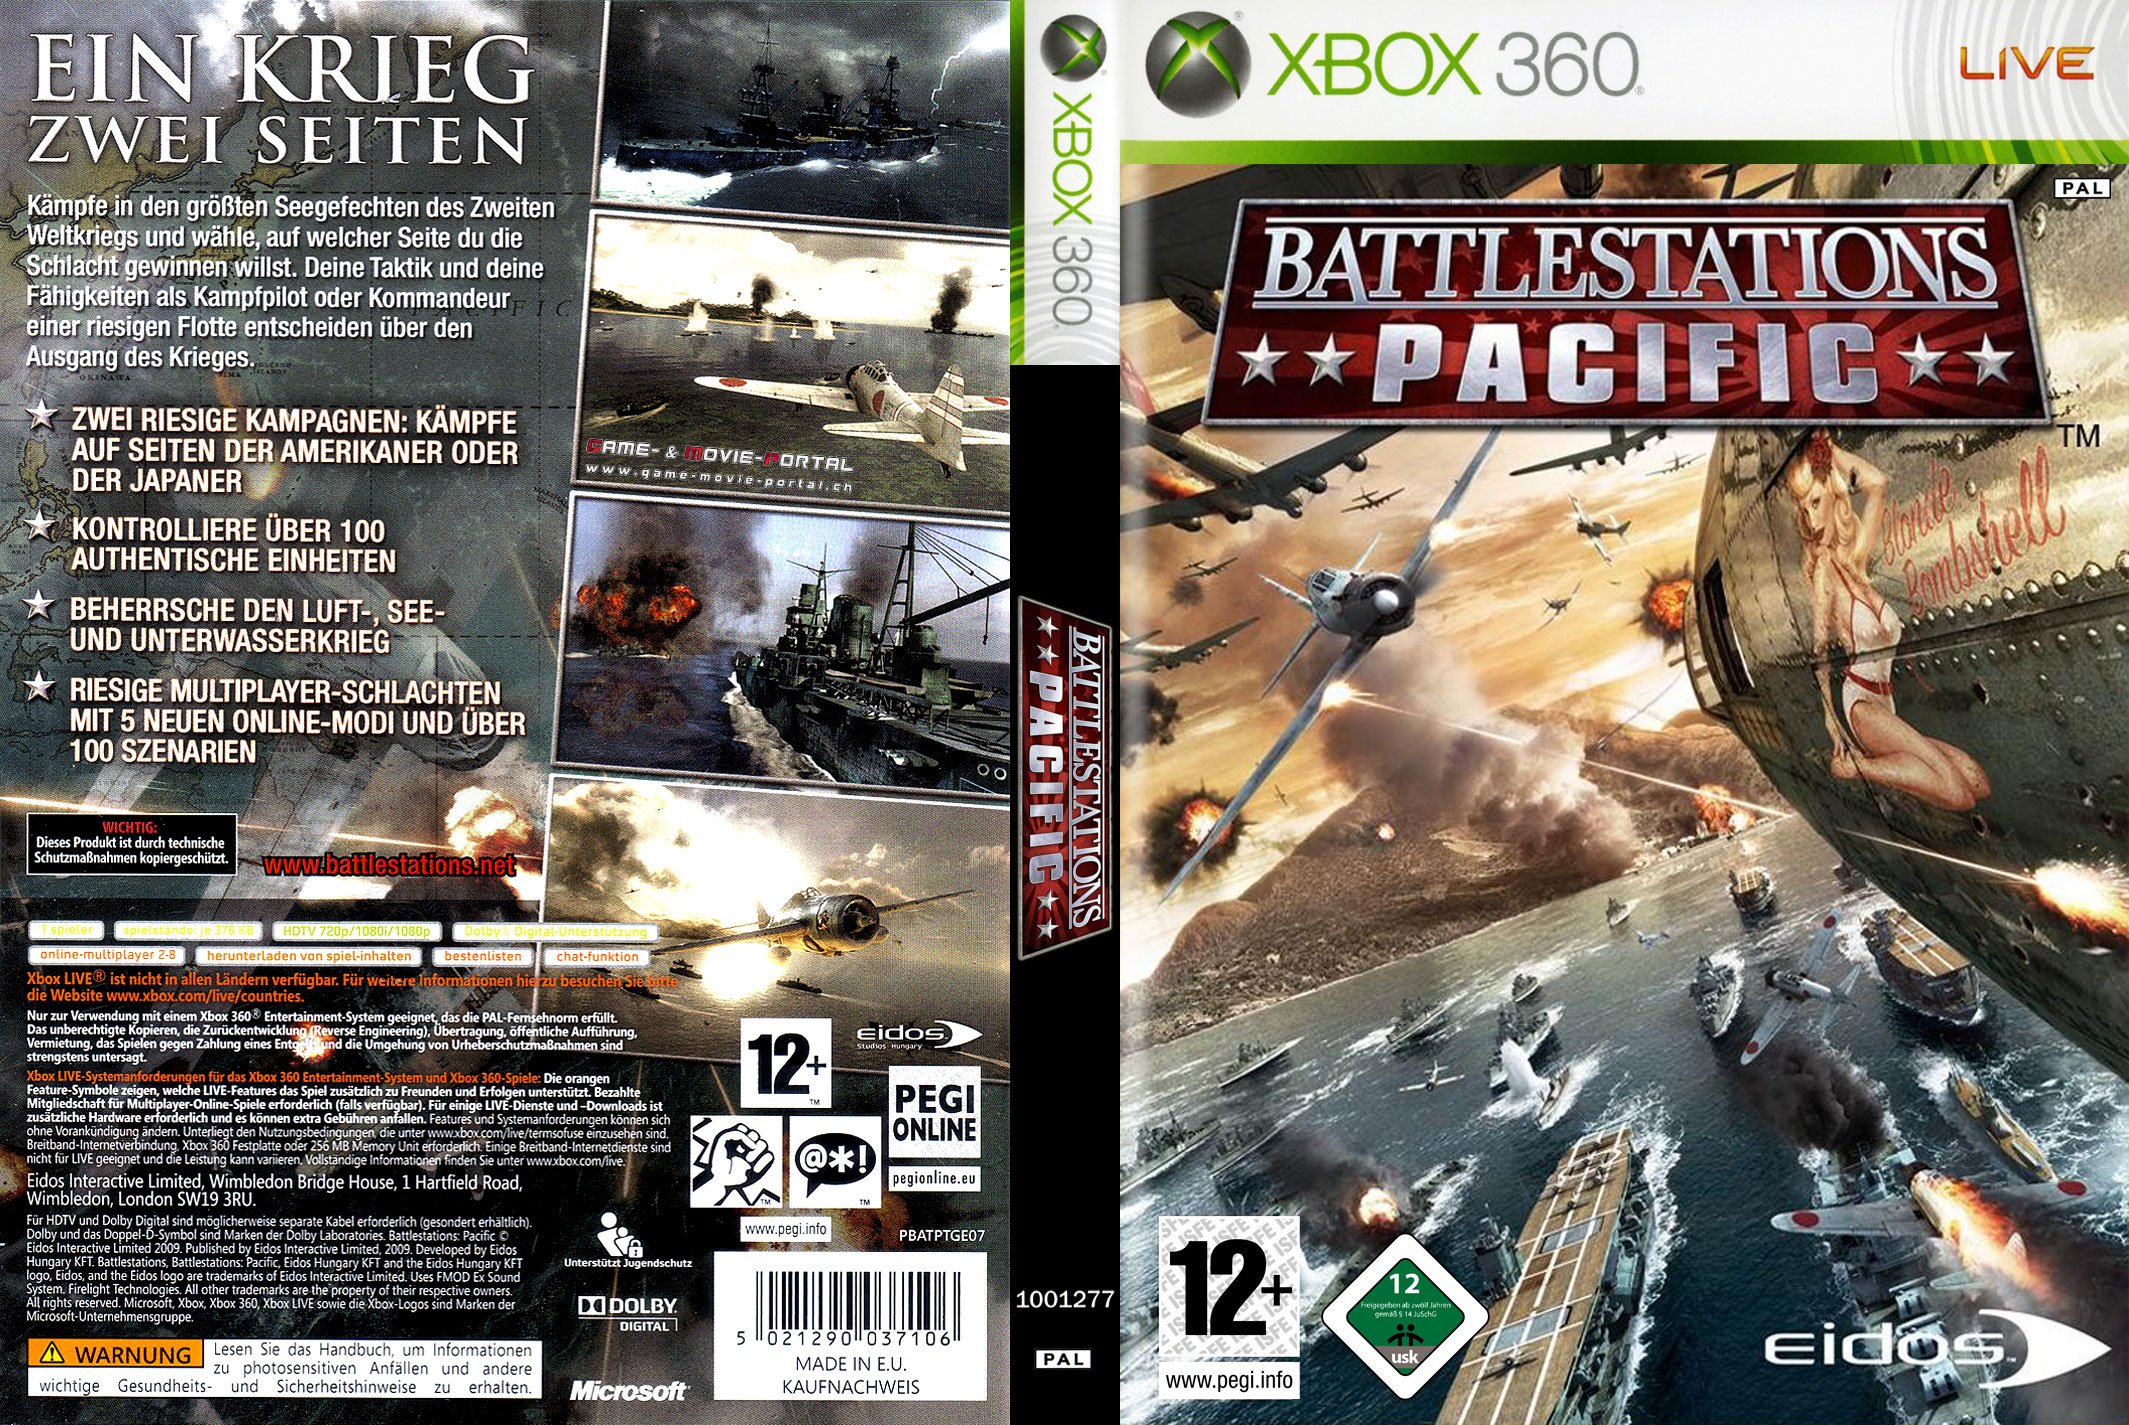 Winderig Verstelbaar Hertog Battlestations Pacific xbox 360 cover german | German DVD Covers